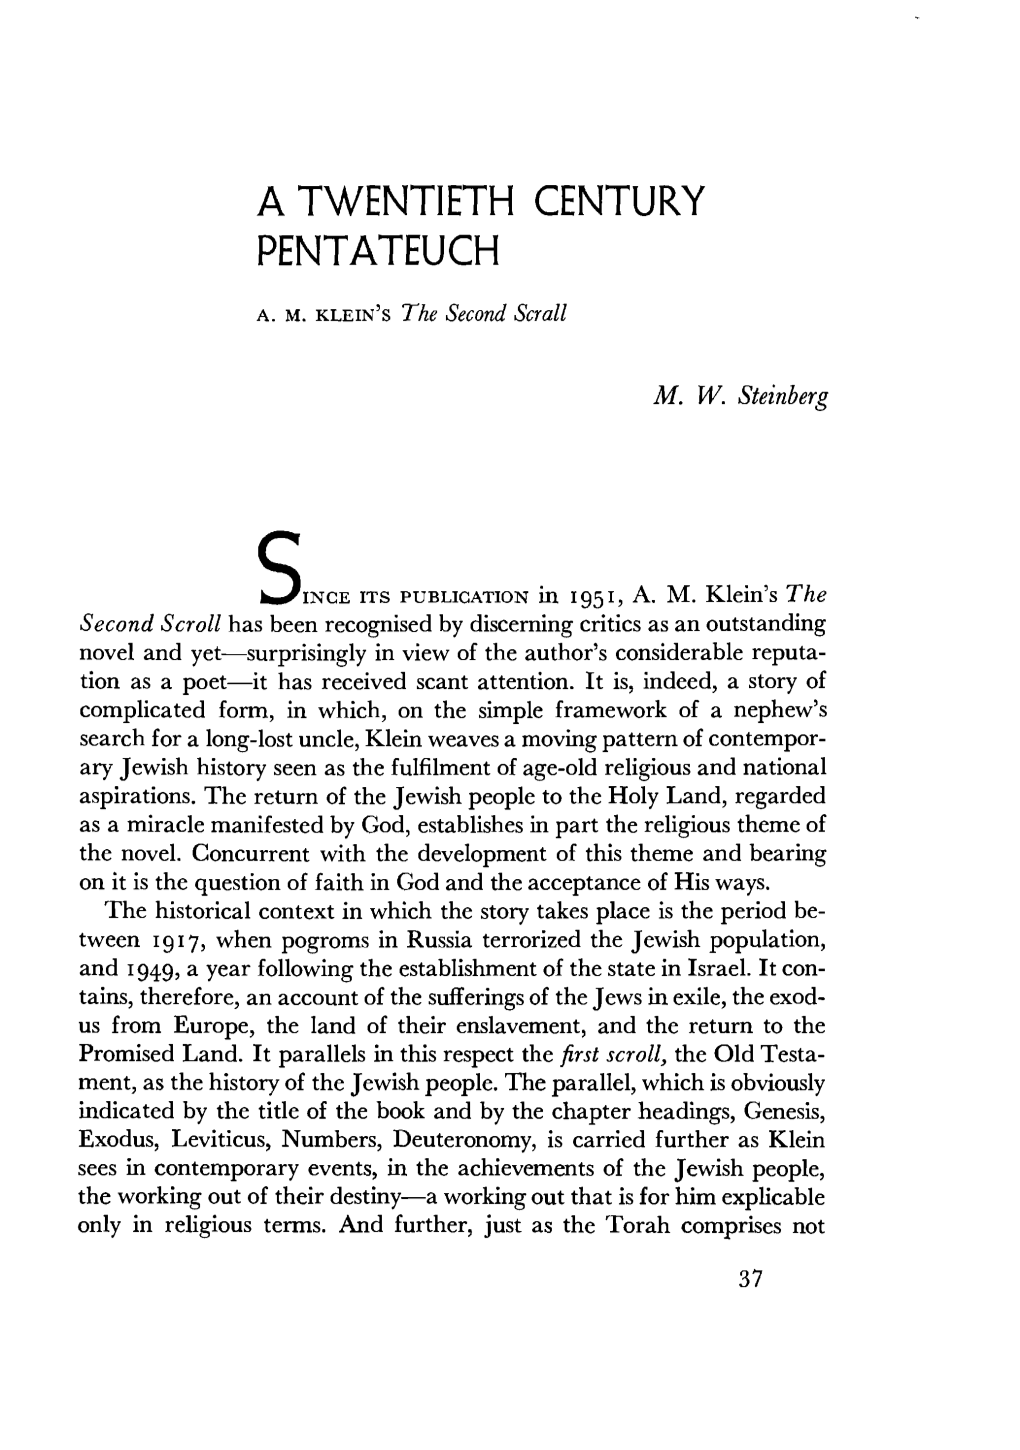 A Twentieth Century Pentateuch